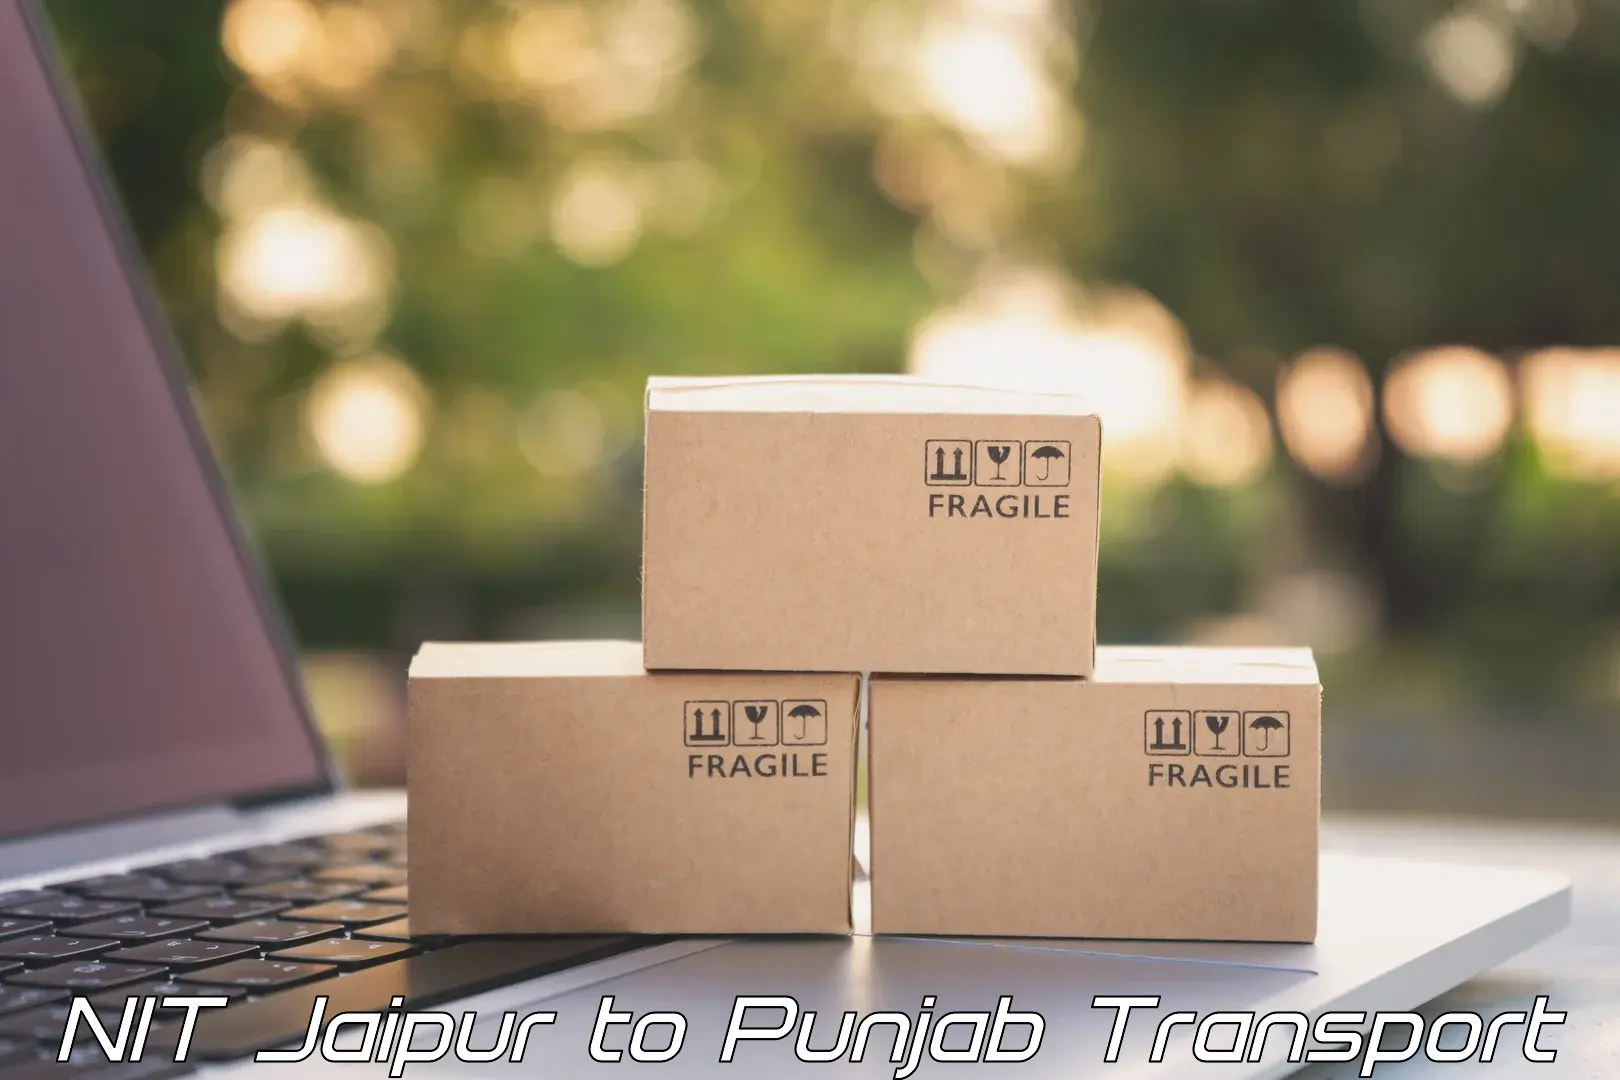 Cargo transport services NIT Jaipur to Punjab